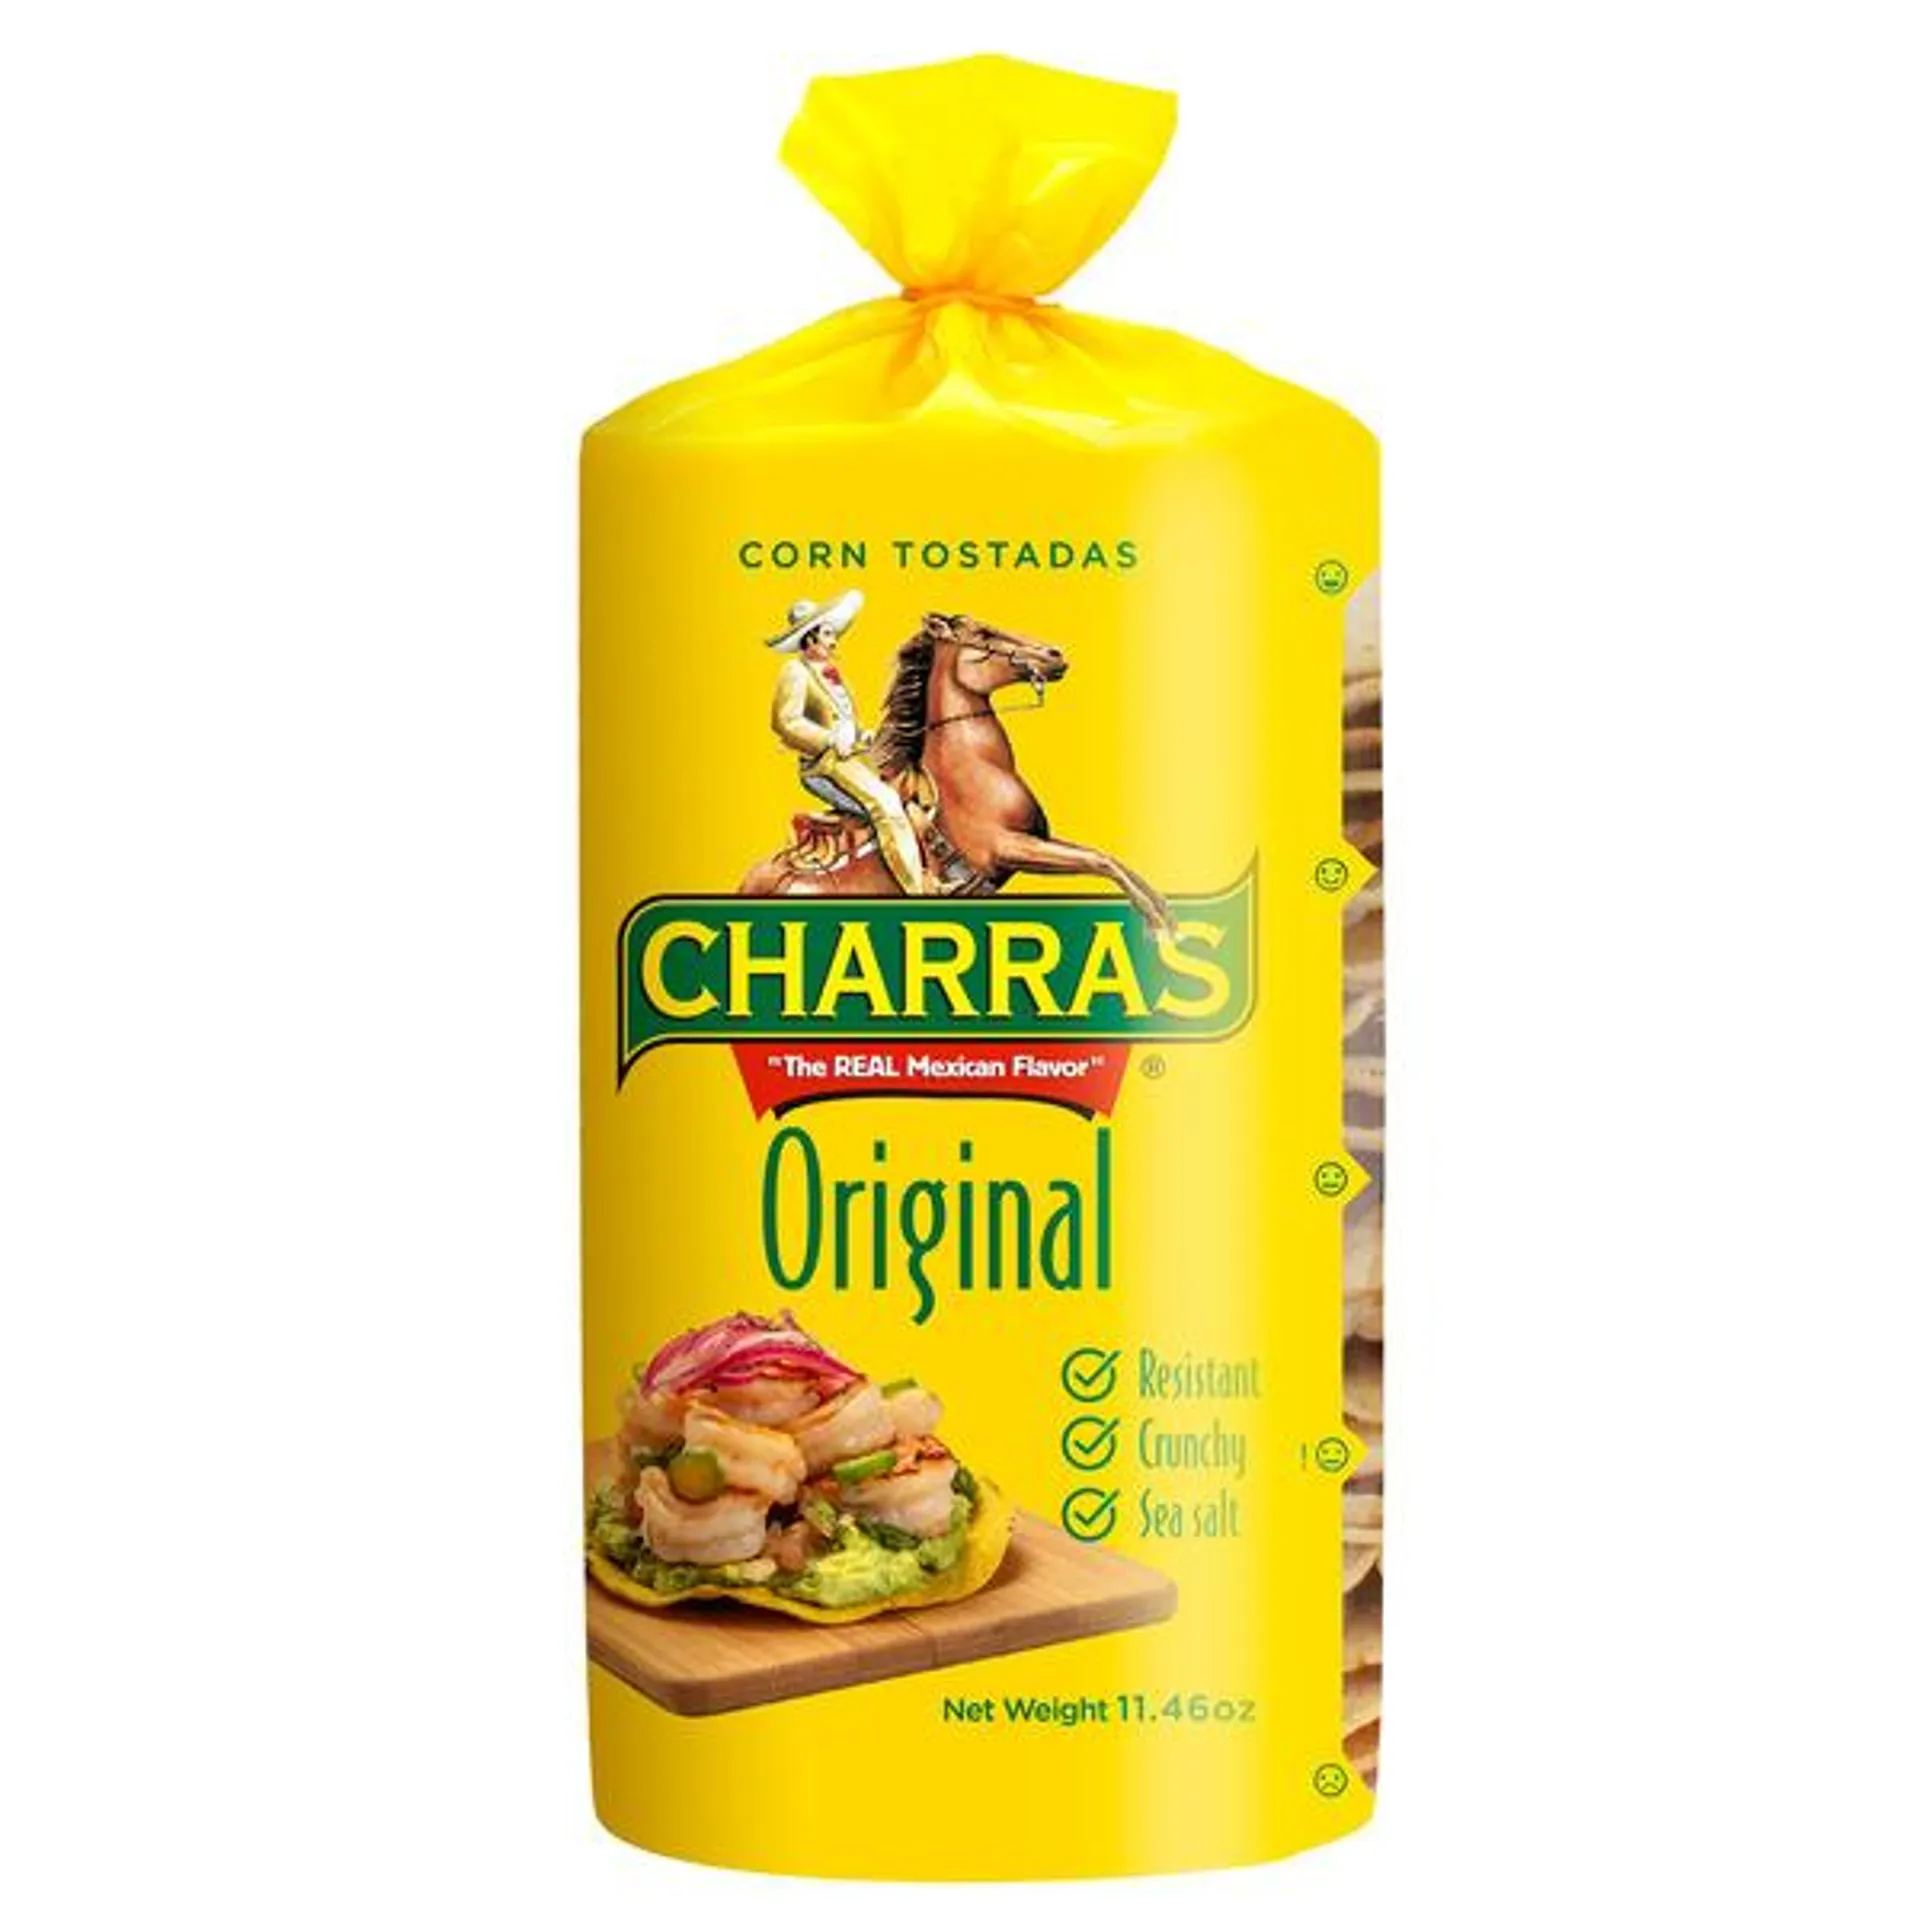 Tostadas Charras Corn Tostadas Original